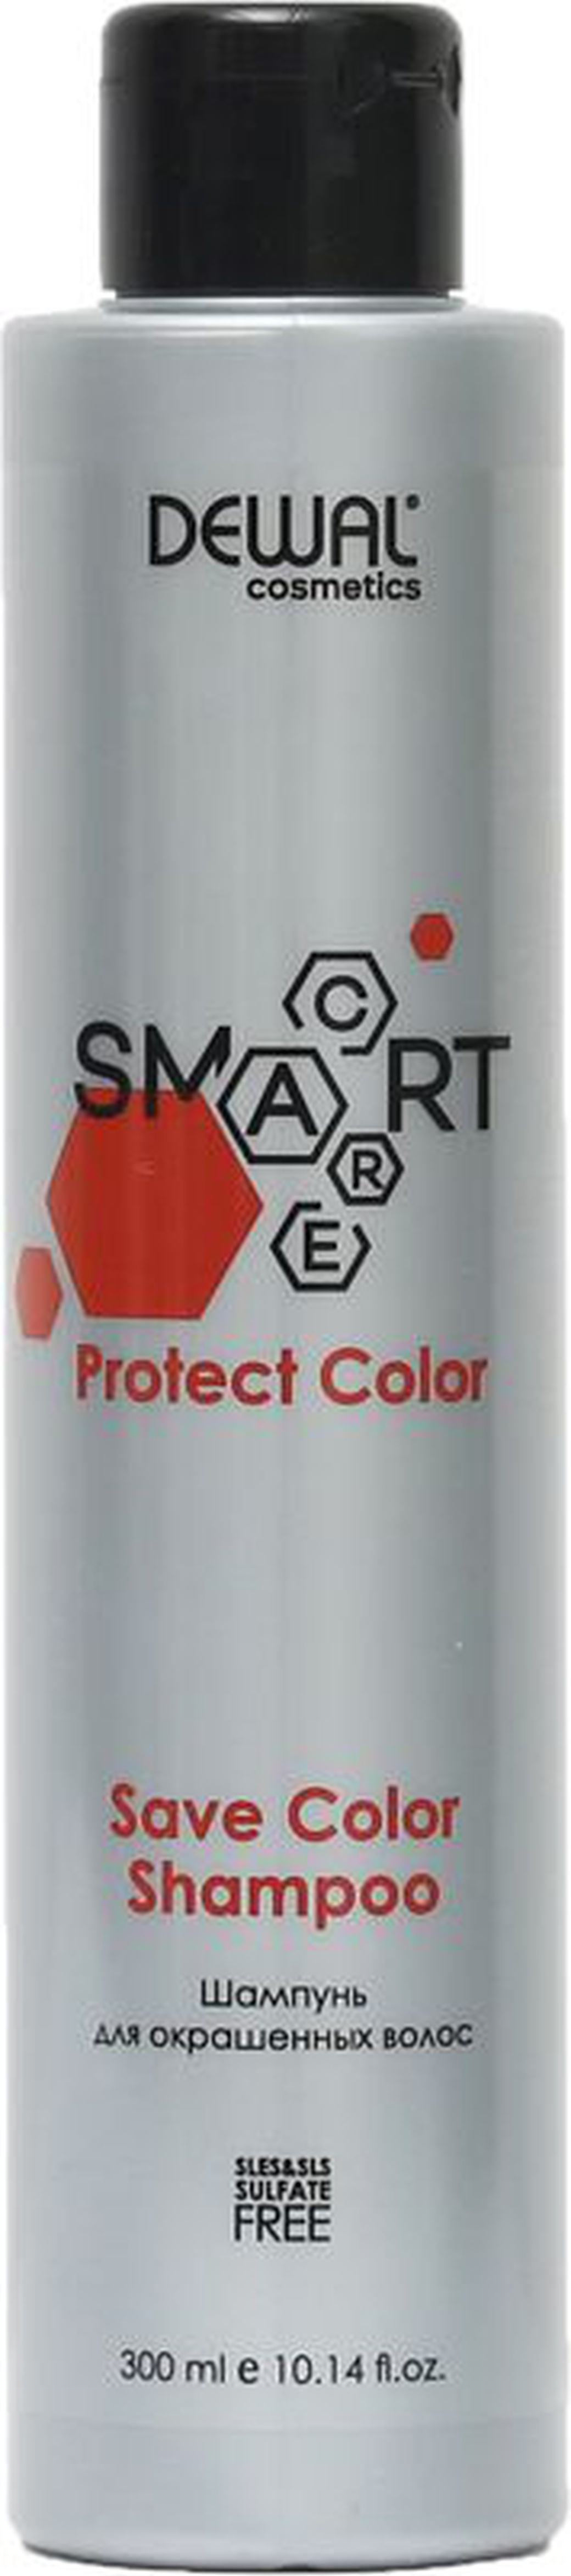 Шампунь для окрашенных волос SMART CARE Protect Color Save Color Shampoo, 300 мл фото